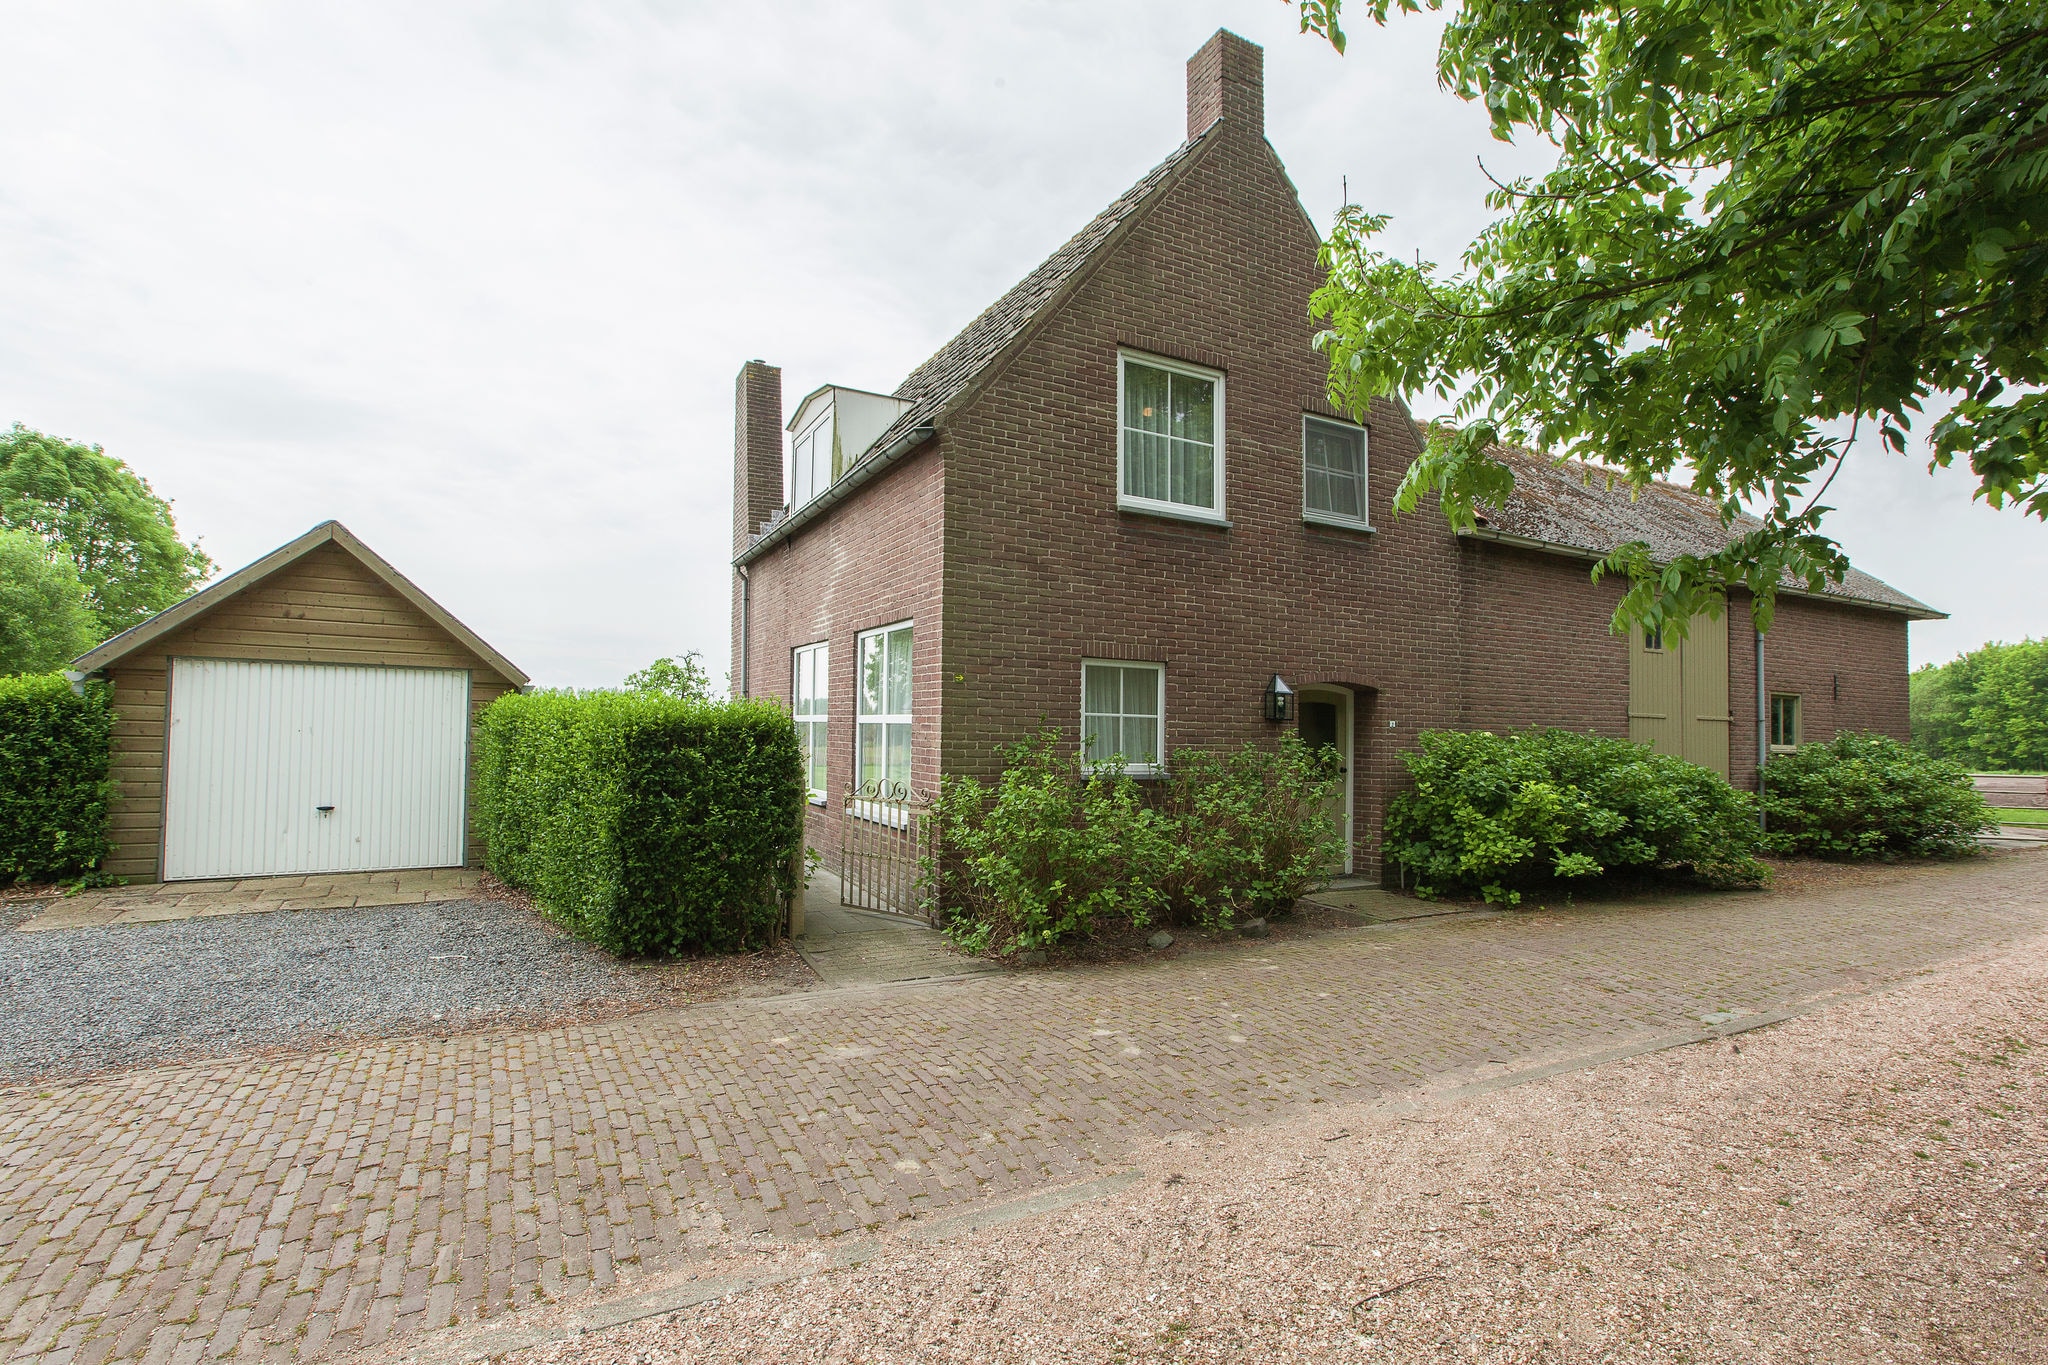 Ferme confortable à Aardenburg, avec jardin clôturé